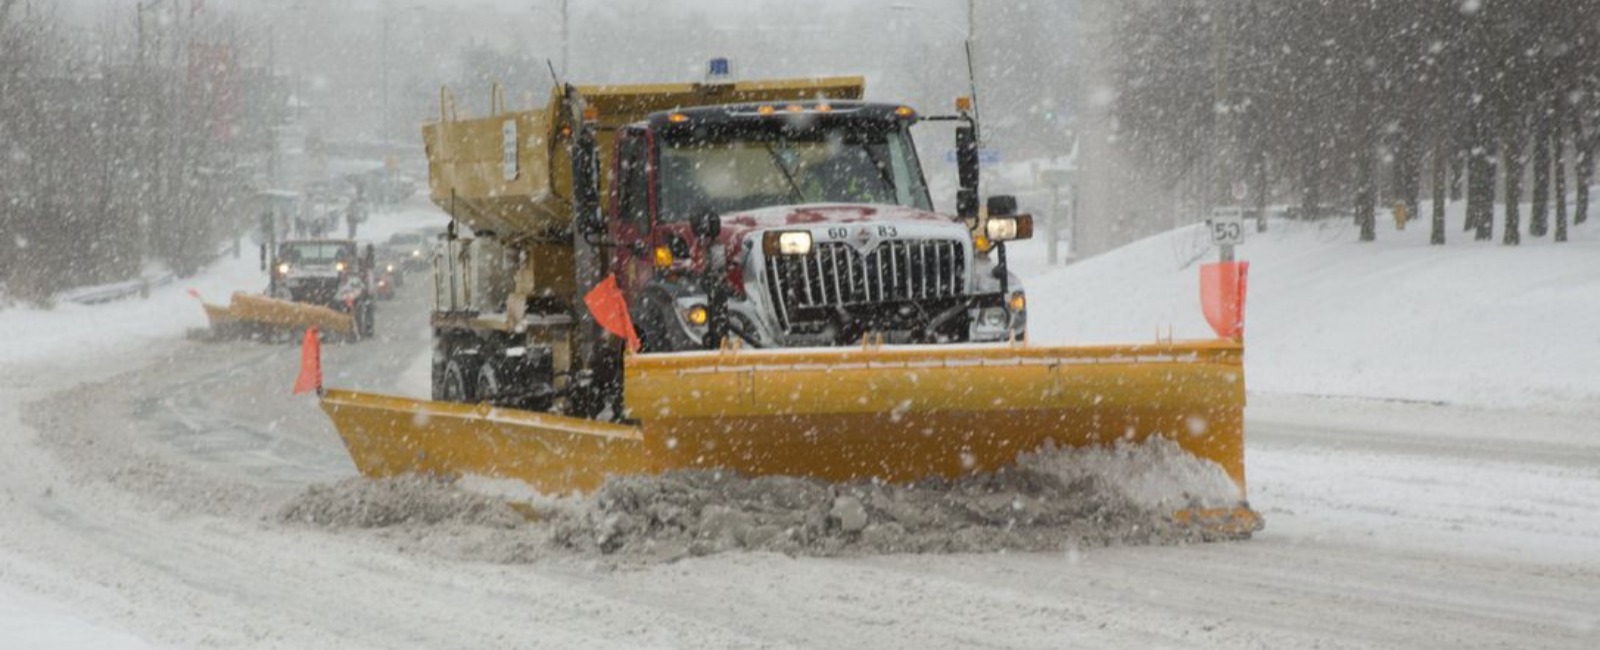 Photo of snow plow